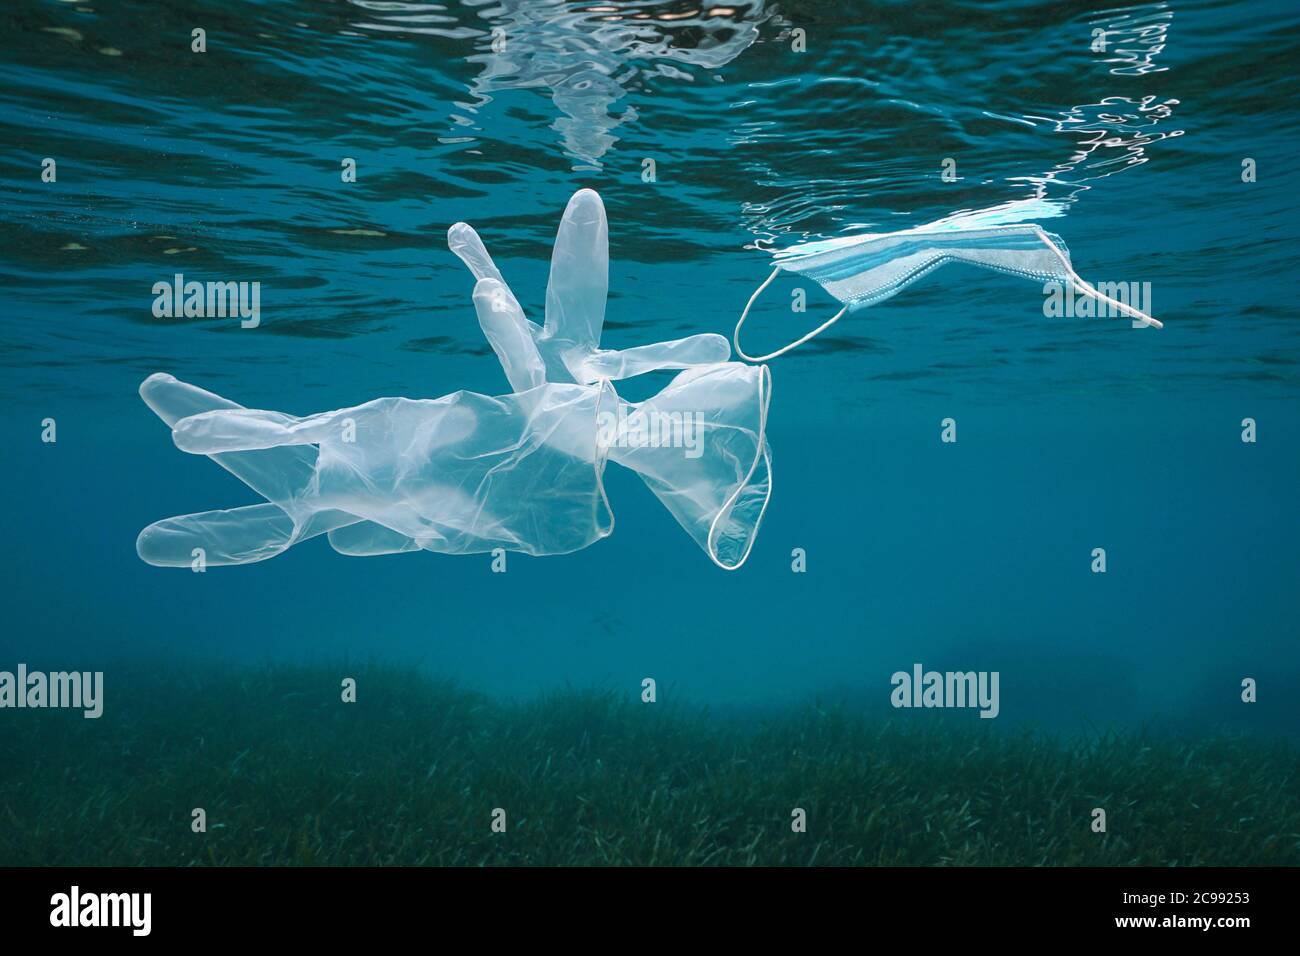 Handschuhe und Gesichtsmaske unter Wasser im Meer, Plastikmüll Verschmutzung seit Coronavirus COVID-19 Pandemie, Mittelmeer Stockfoto